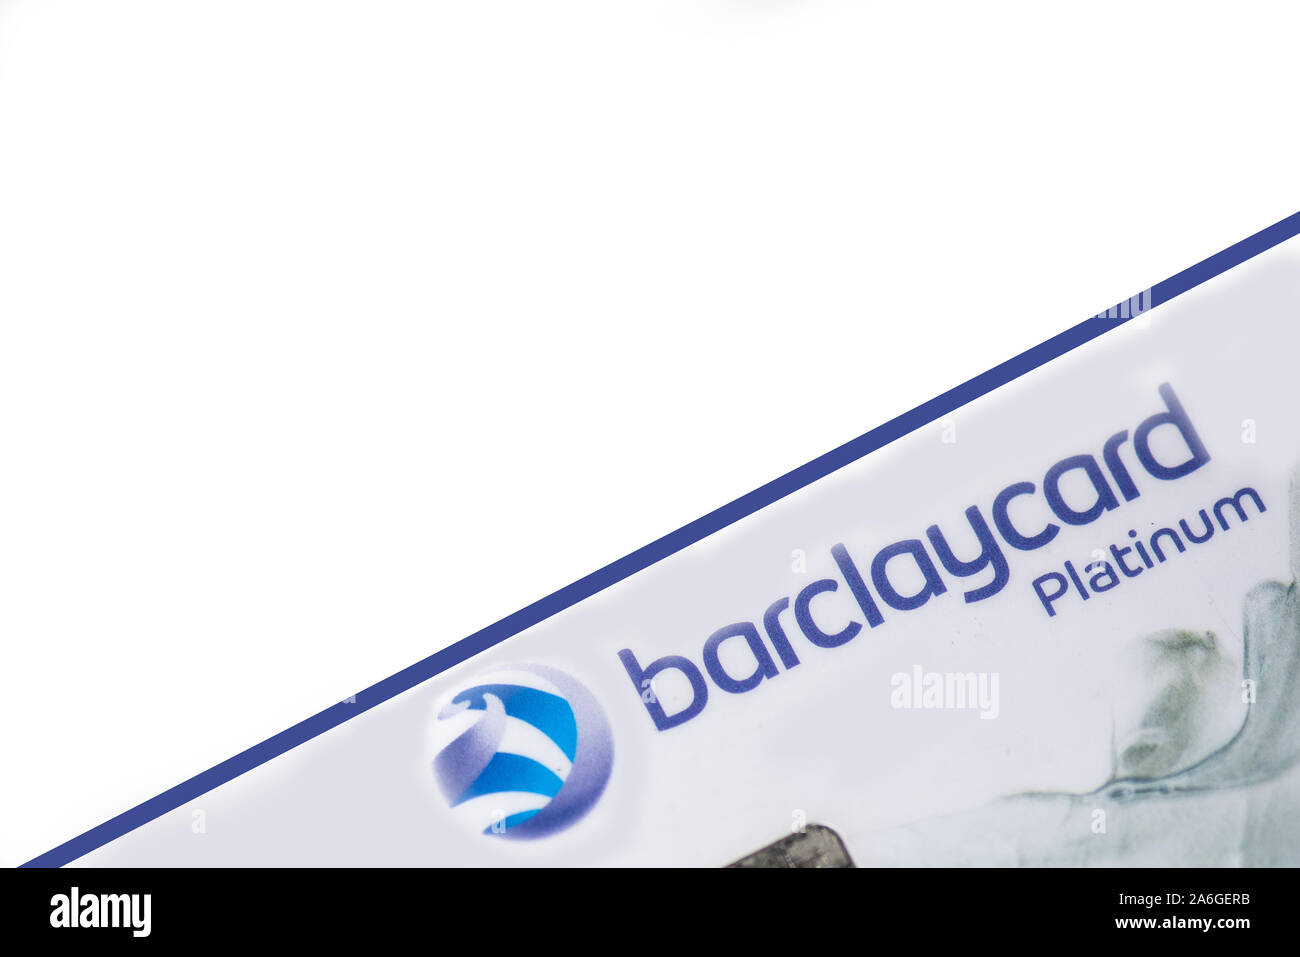 Barclaycard Platinum Kreditkarte auf einem weißen Hintergrund, Visa Card, bargeldlose Gesellschaft Stockfoto